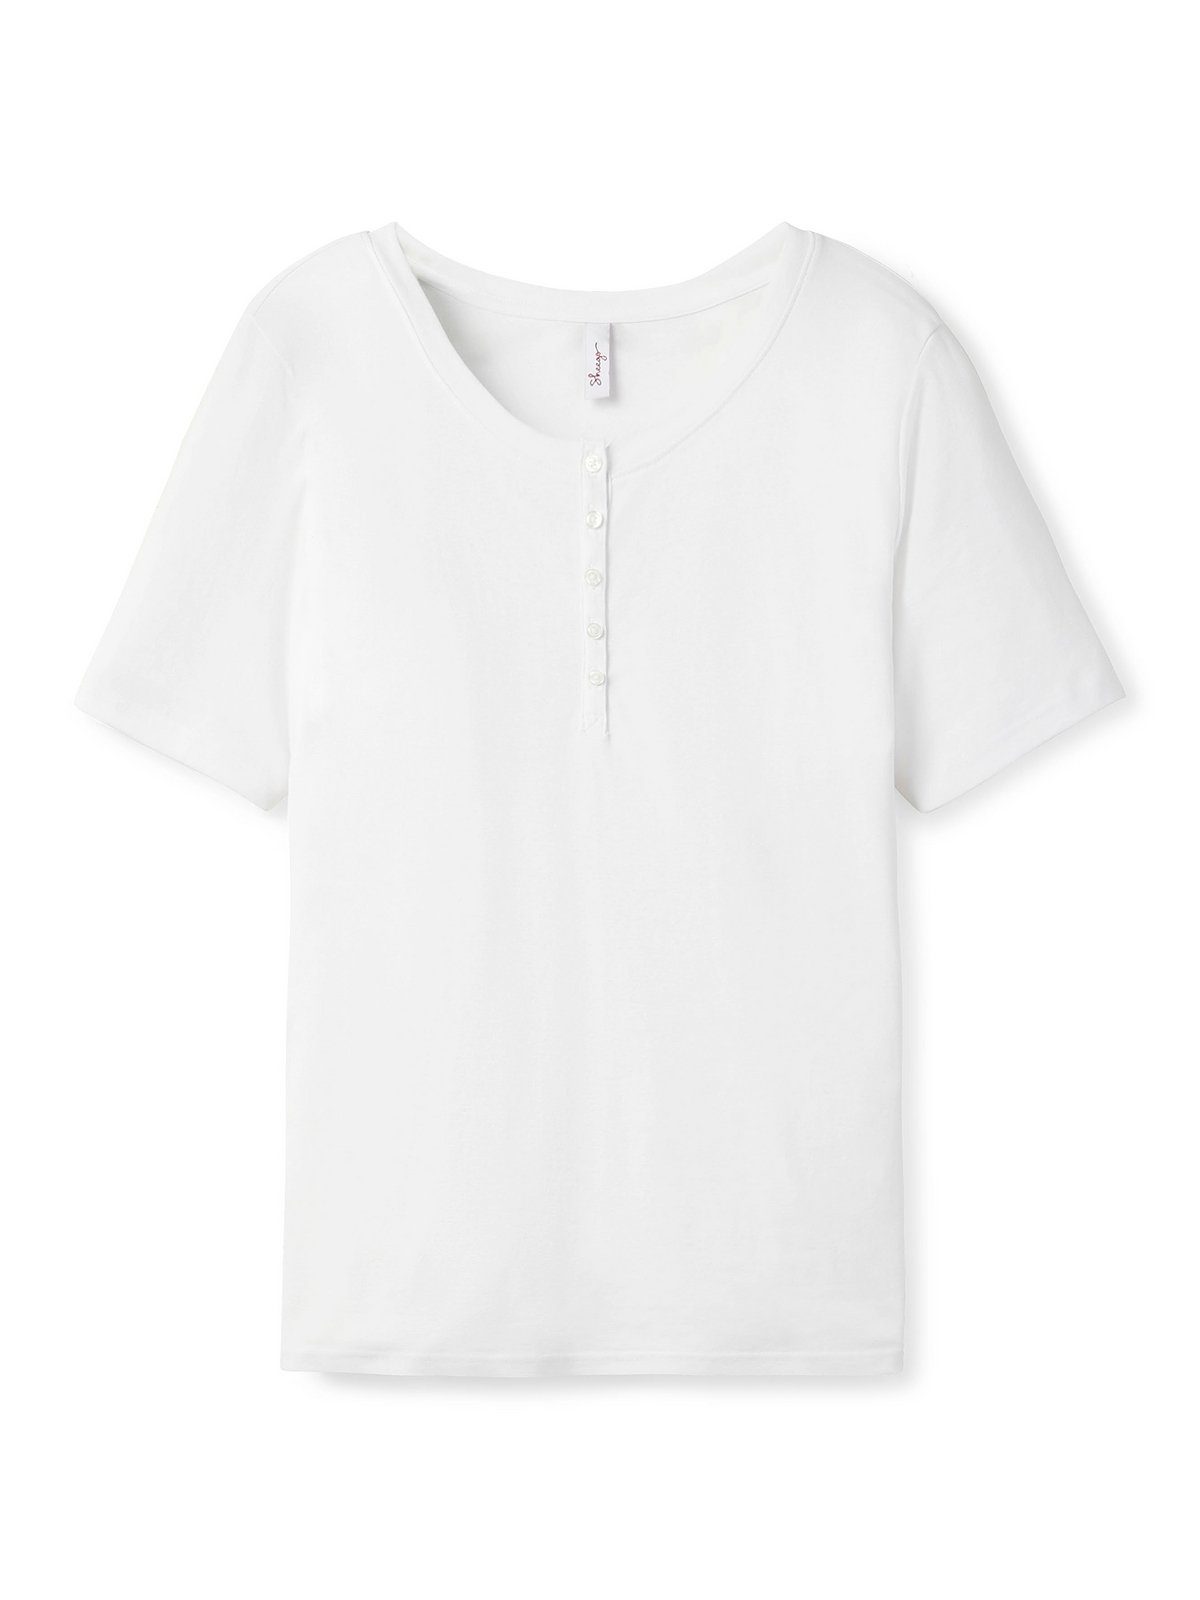 Große Knopfleiste mit Rippstruktur, Sheego T-Shirt Größen in weiß